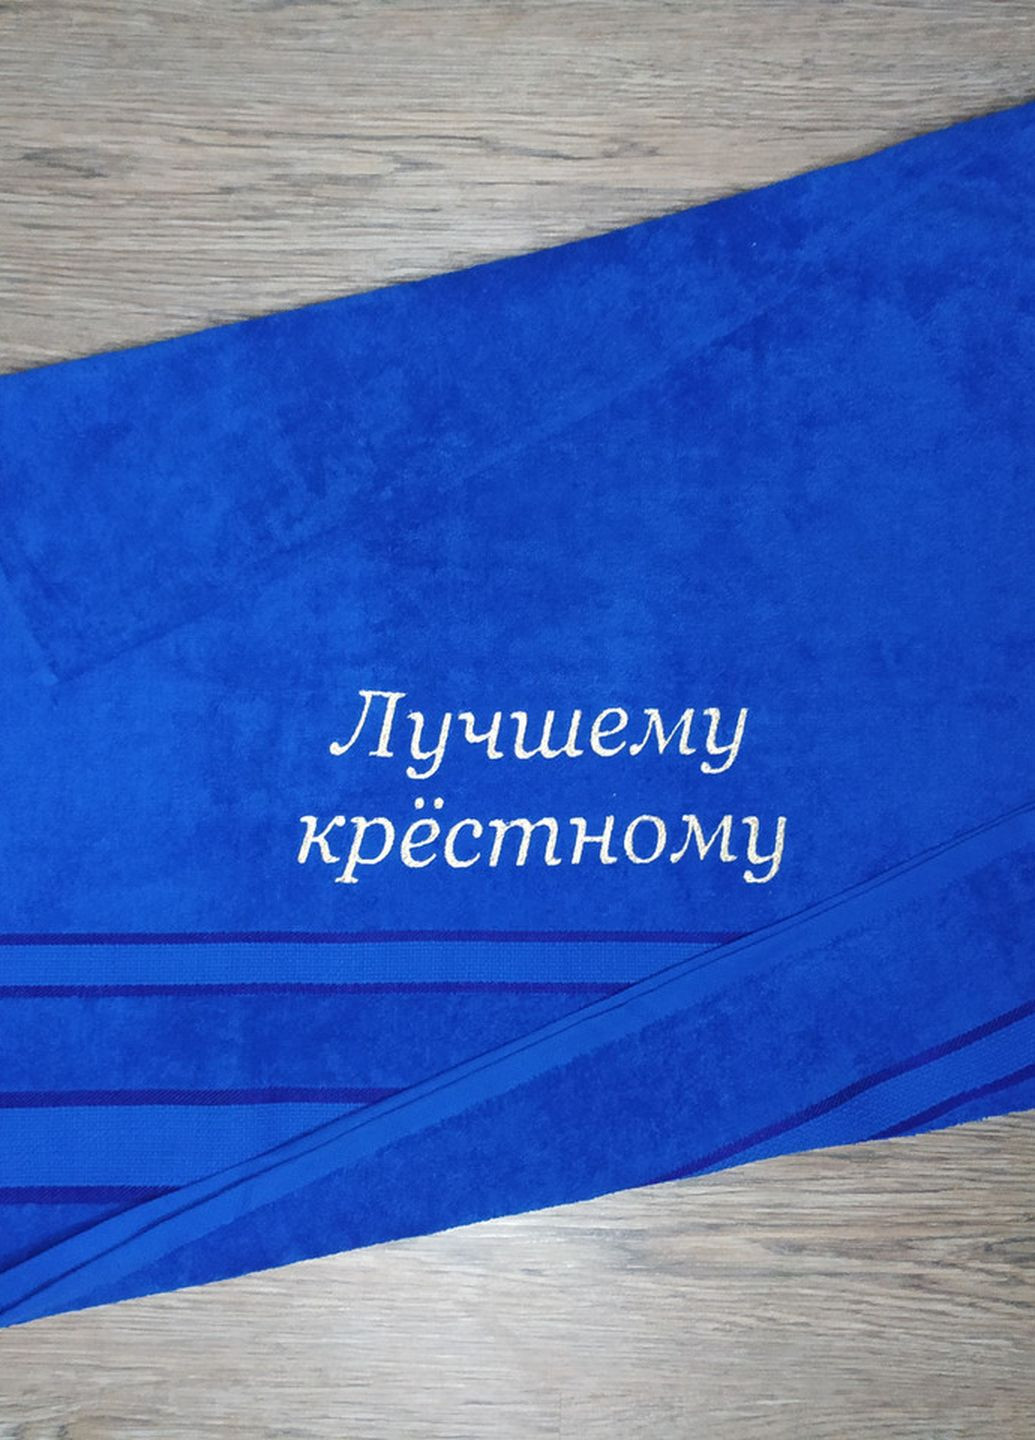 No Brand полотенце с вышивкой махровое банное 70*140 синий крестному папе куму 00248 однотонный синий производство - Украина